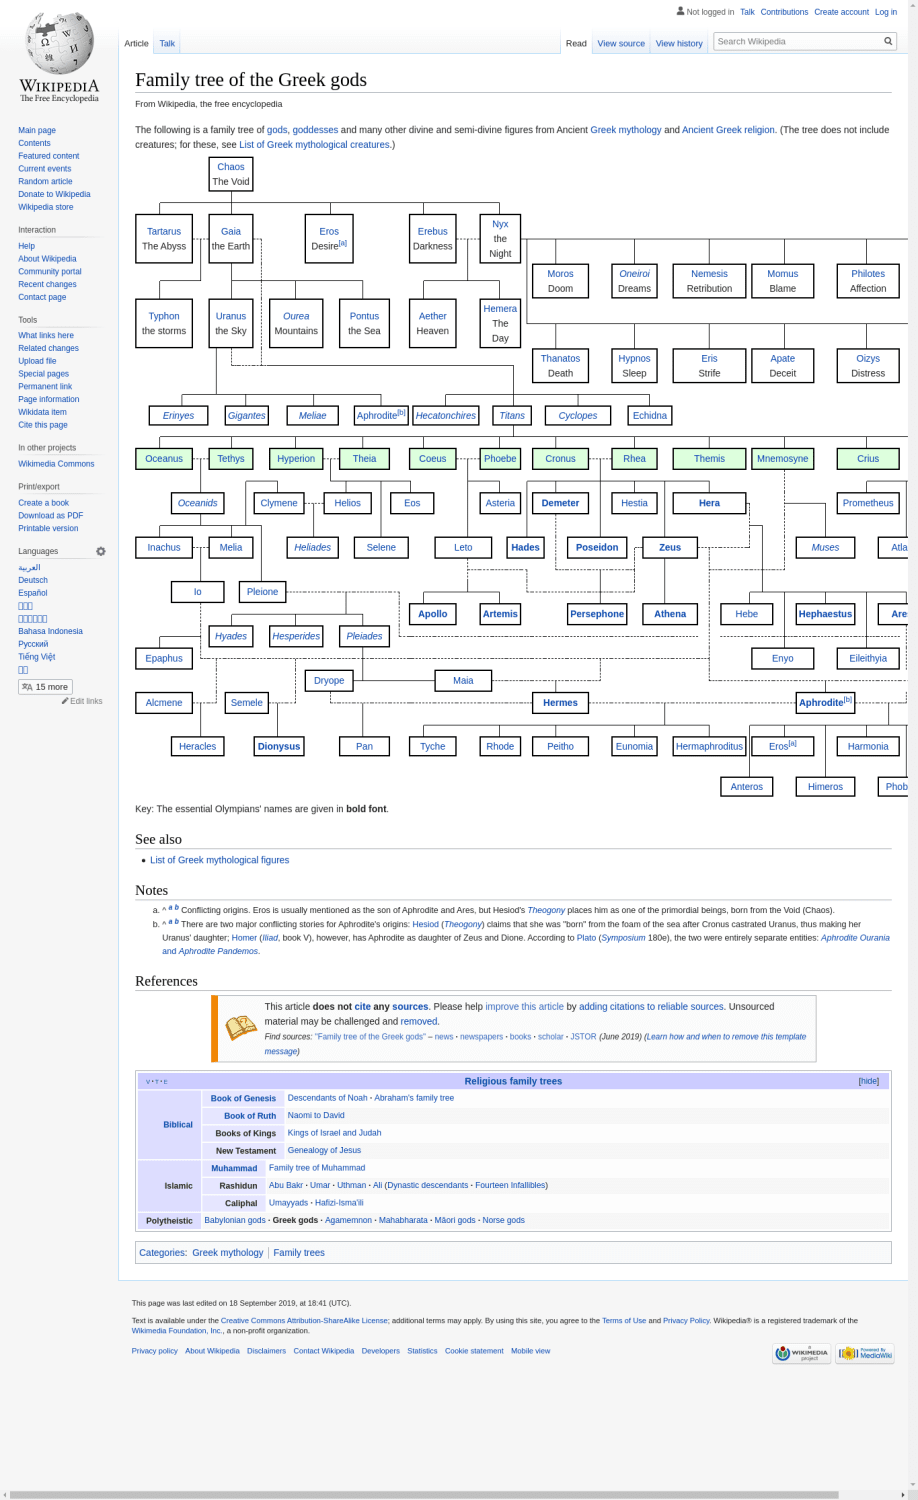 Family tree of the Greek gods